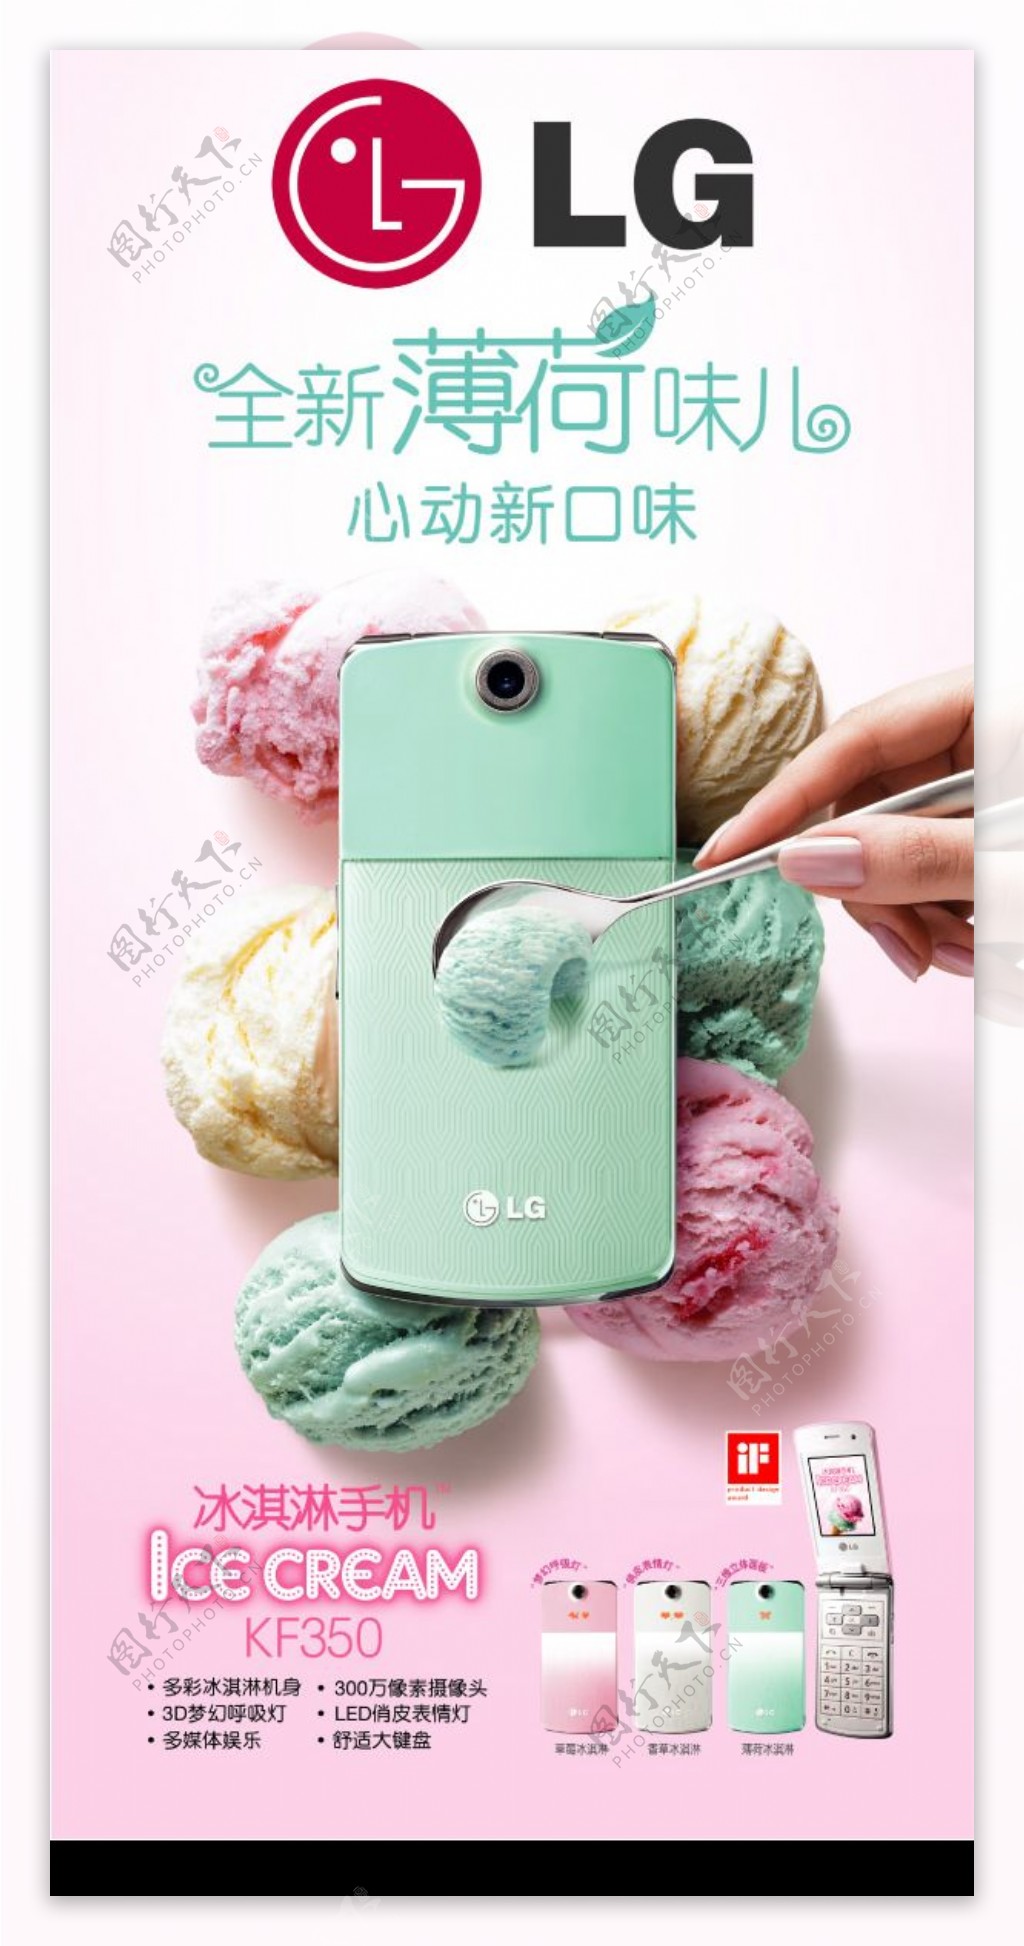 KF350冰淇凌手机广告图片